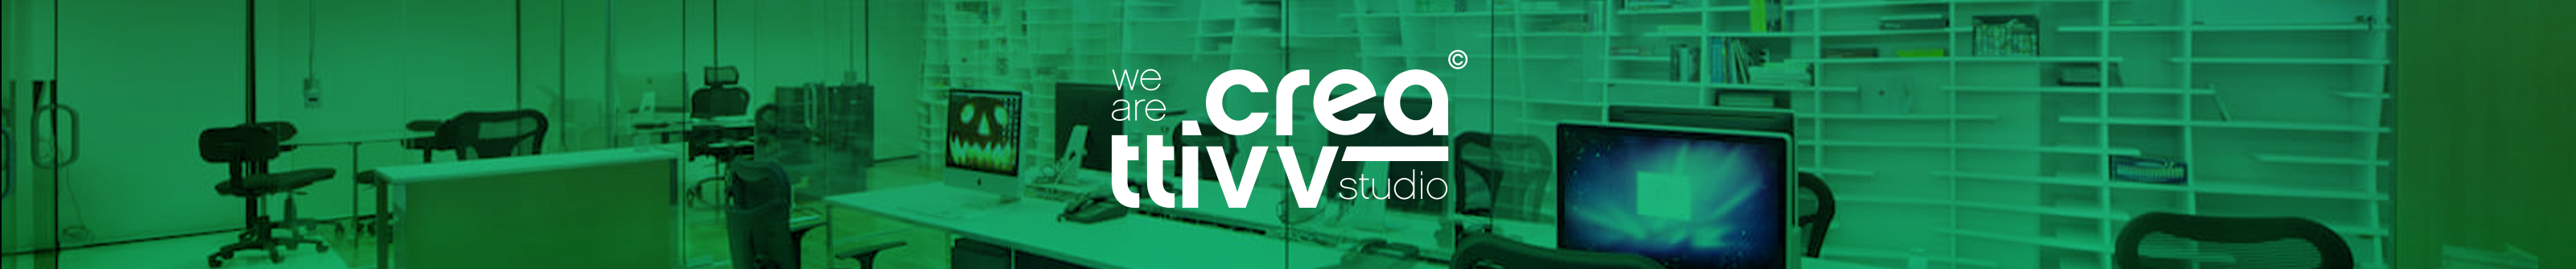 Creattivv Studio's profile banner